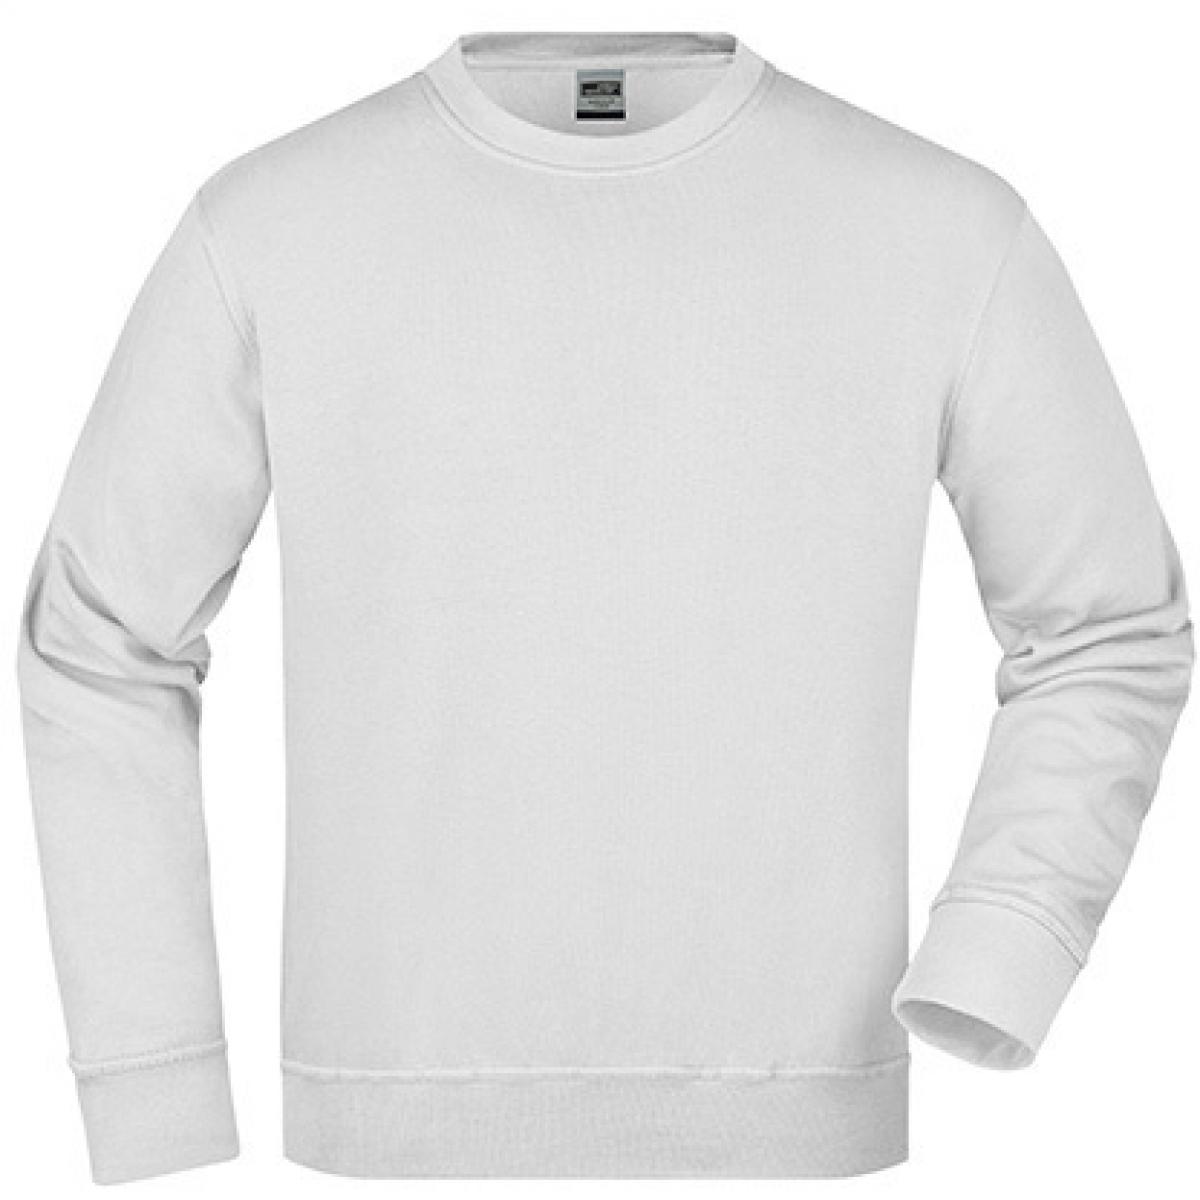 Hersteller: James+Nicholson Herstellernummer: JN840 Artikelbezeichnung: Workwear Sweatshirt / Waschbar bis 60C Farbe: White